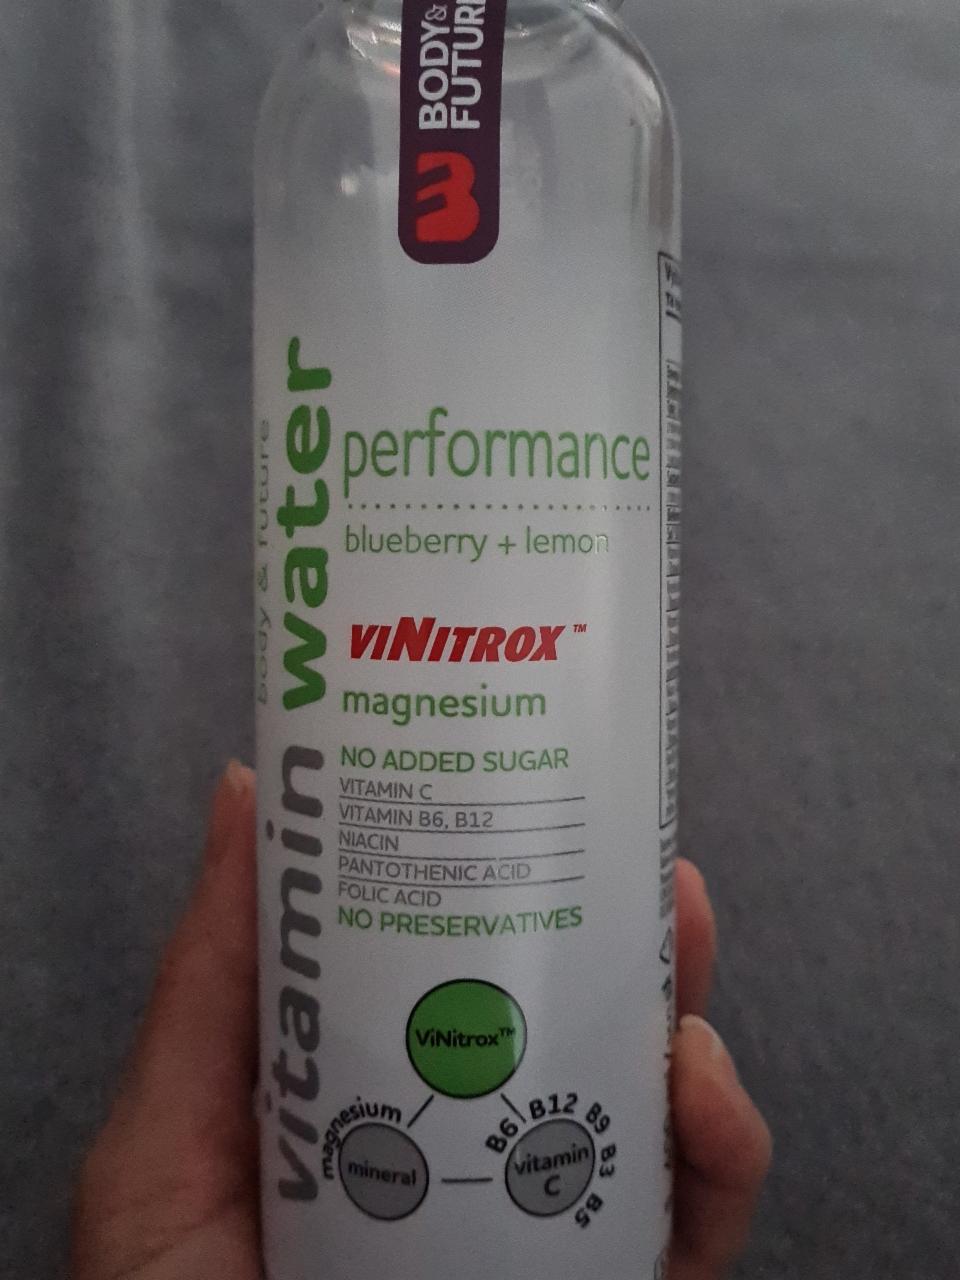 Fotografie - Vitamin Water Performance blueberry + lemon